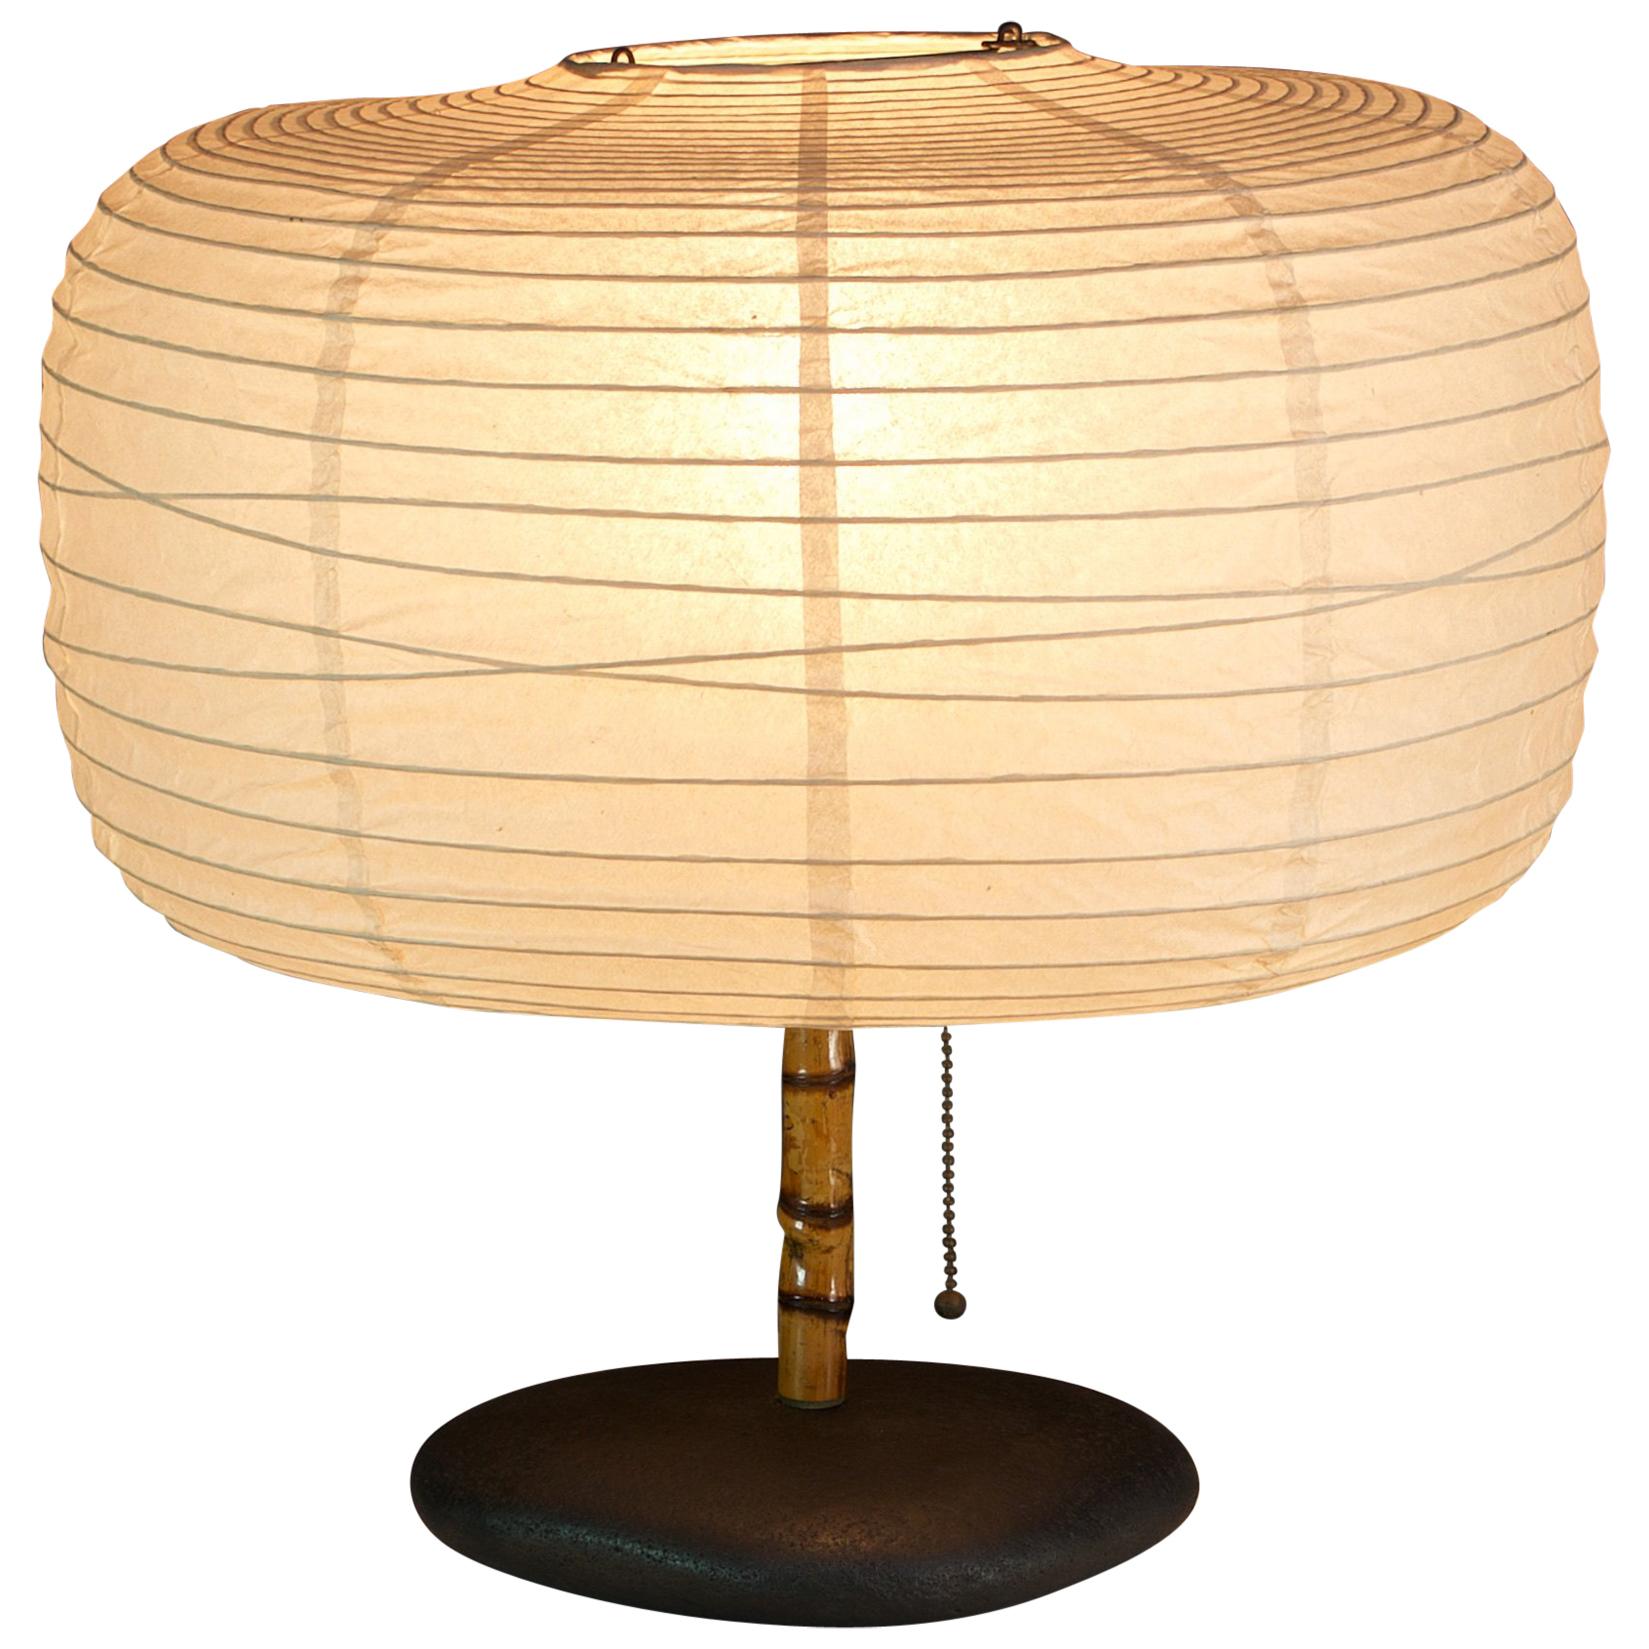 Modern50 River Stone Bamboo Lamp Lantern Assemblage Cabinmodern Japan Chalet